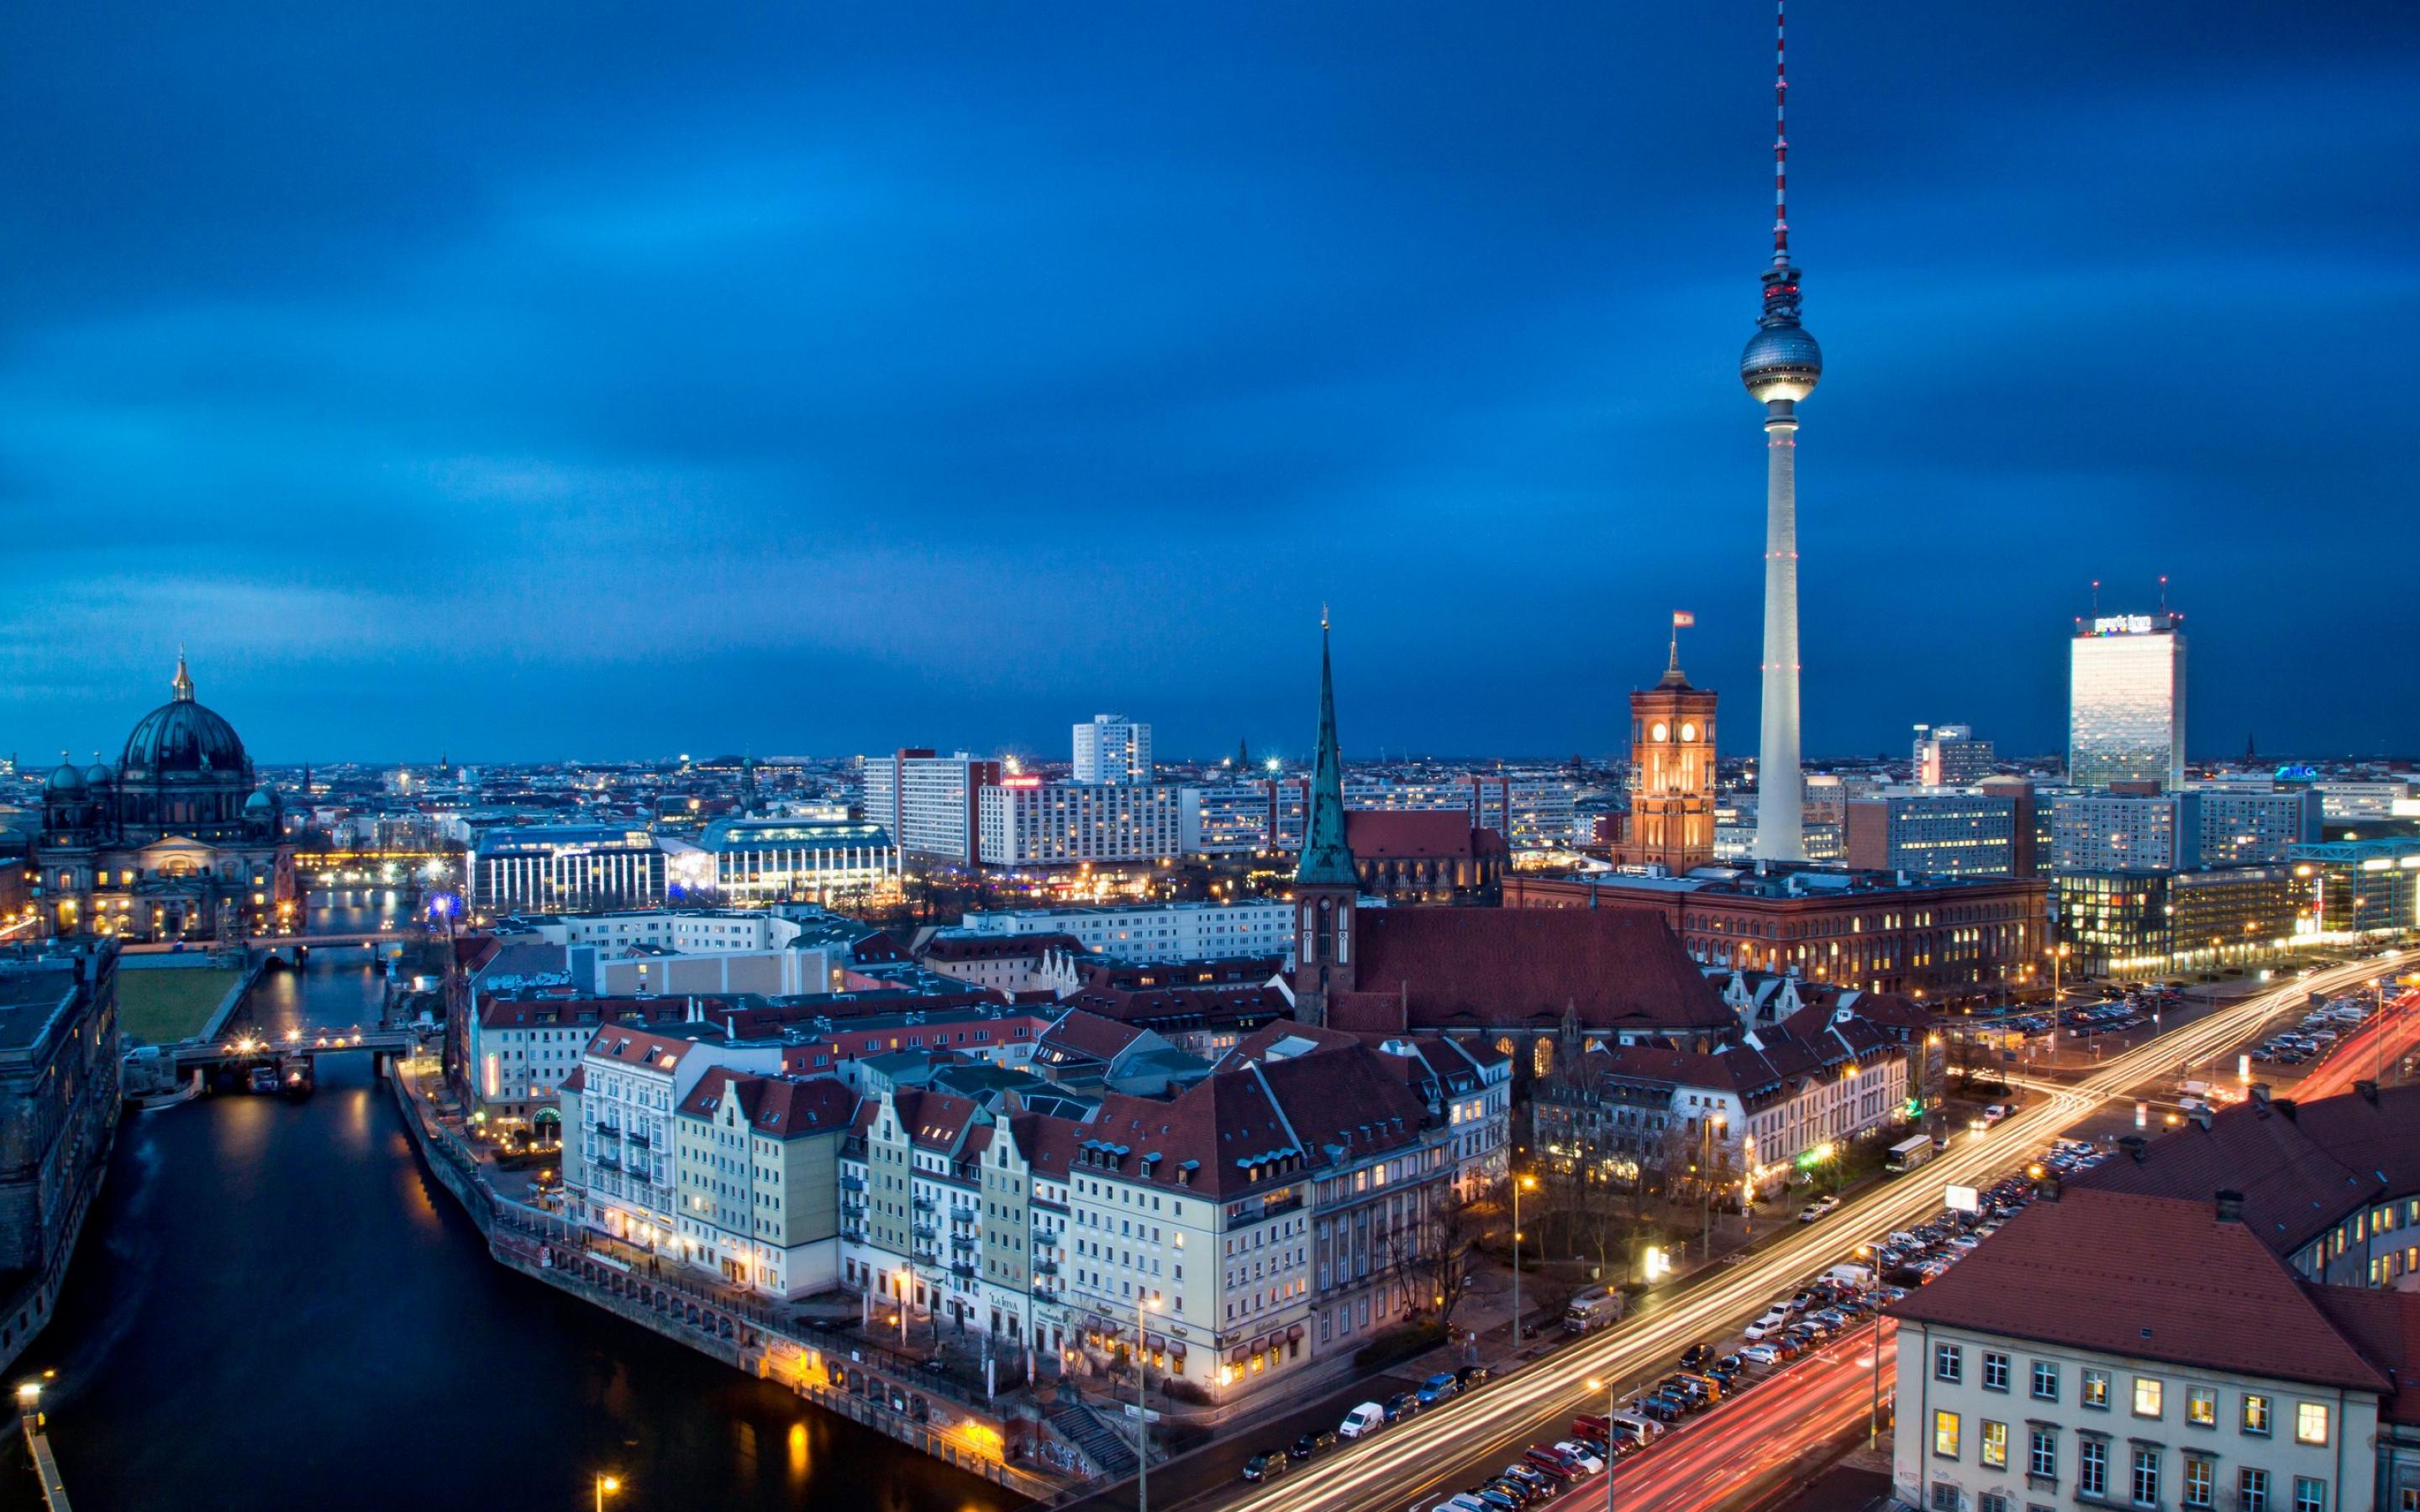 1001-travel-destinations-Berlin-Fernsehturm-Berlin-wallpaper